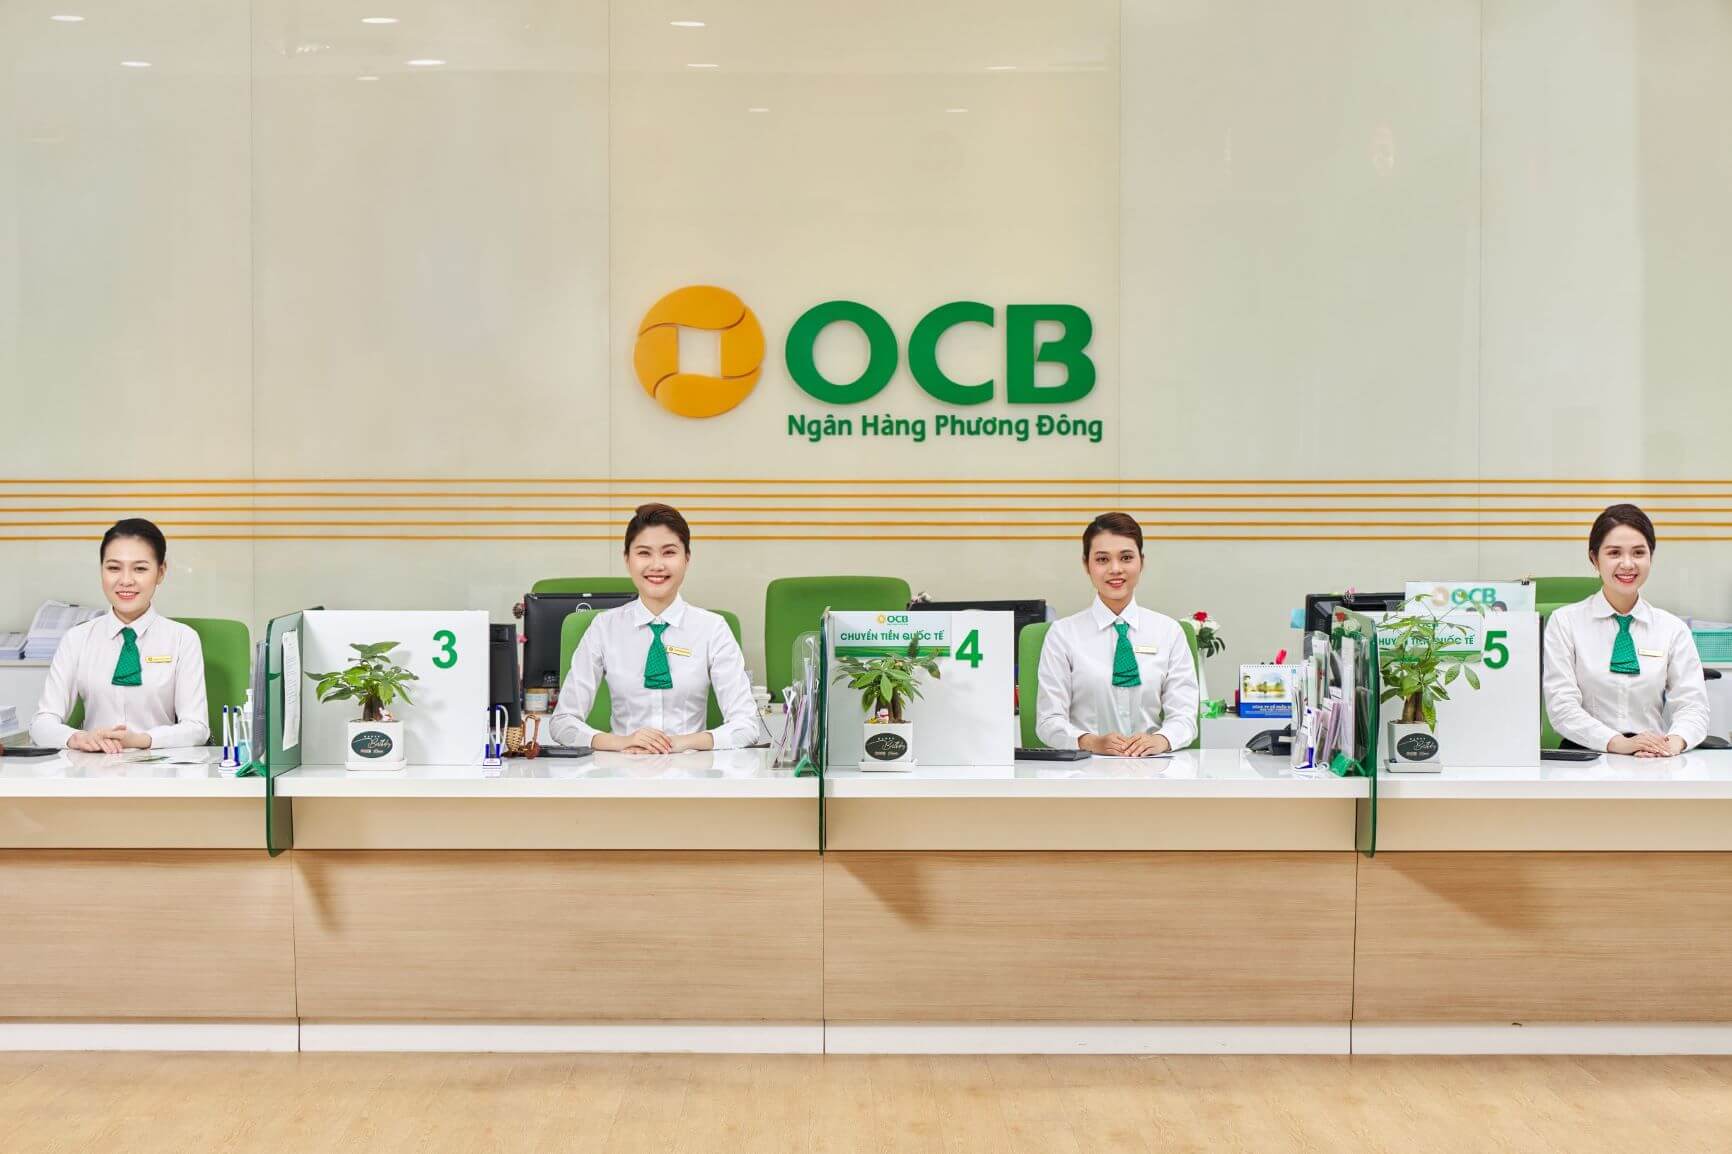 Giới thiệu về OCB